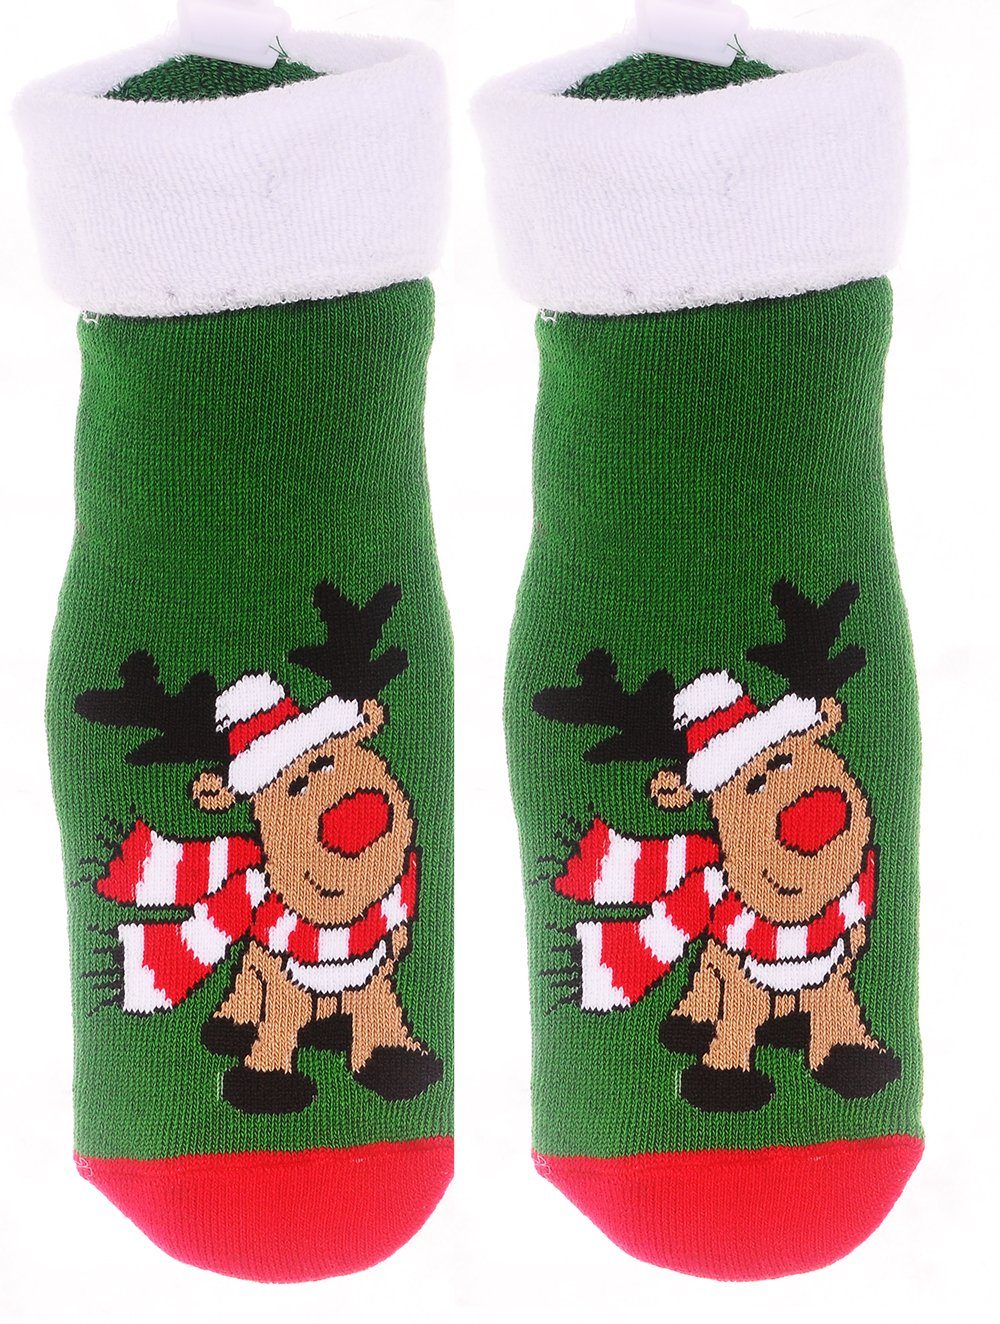 Martinex Socken Socken Weihnachten 39 38 42 Weihnachtssocken warme 35